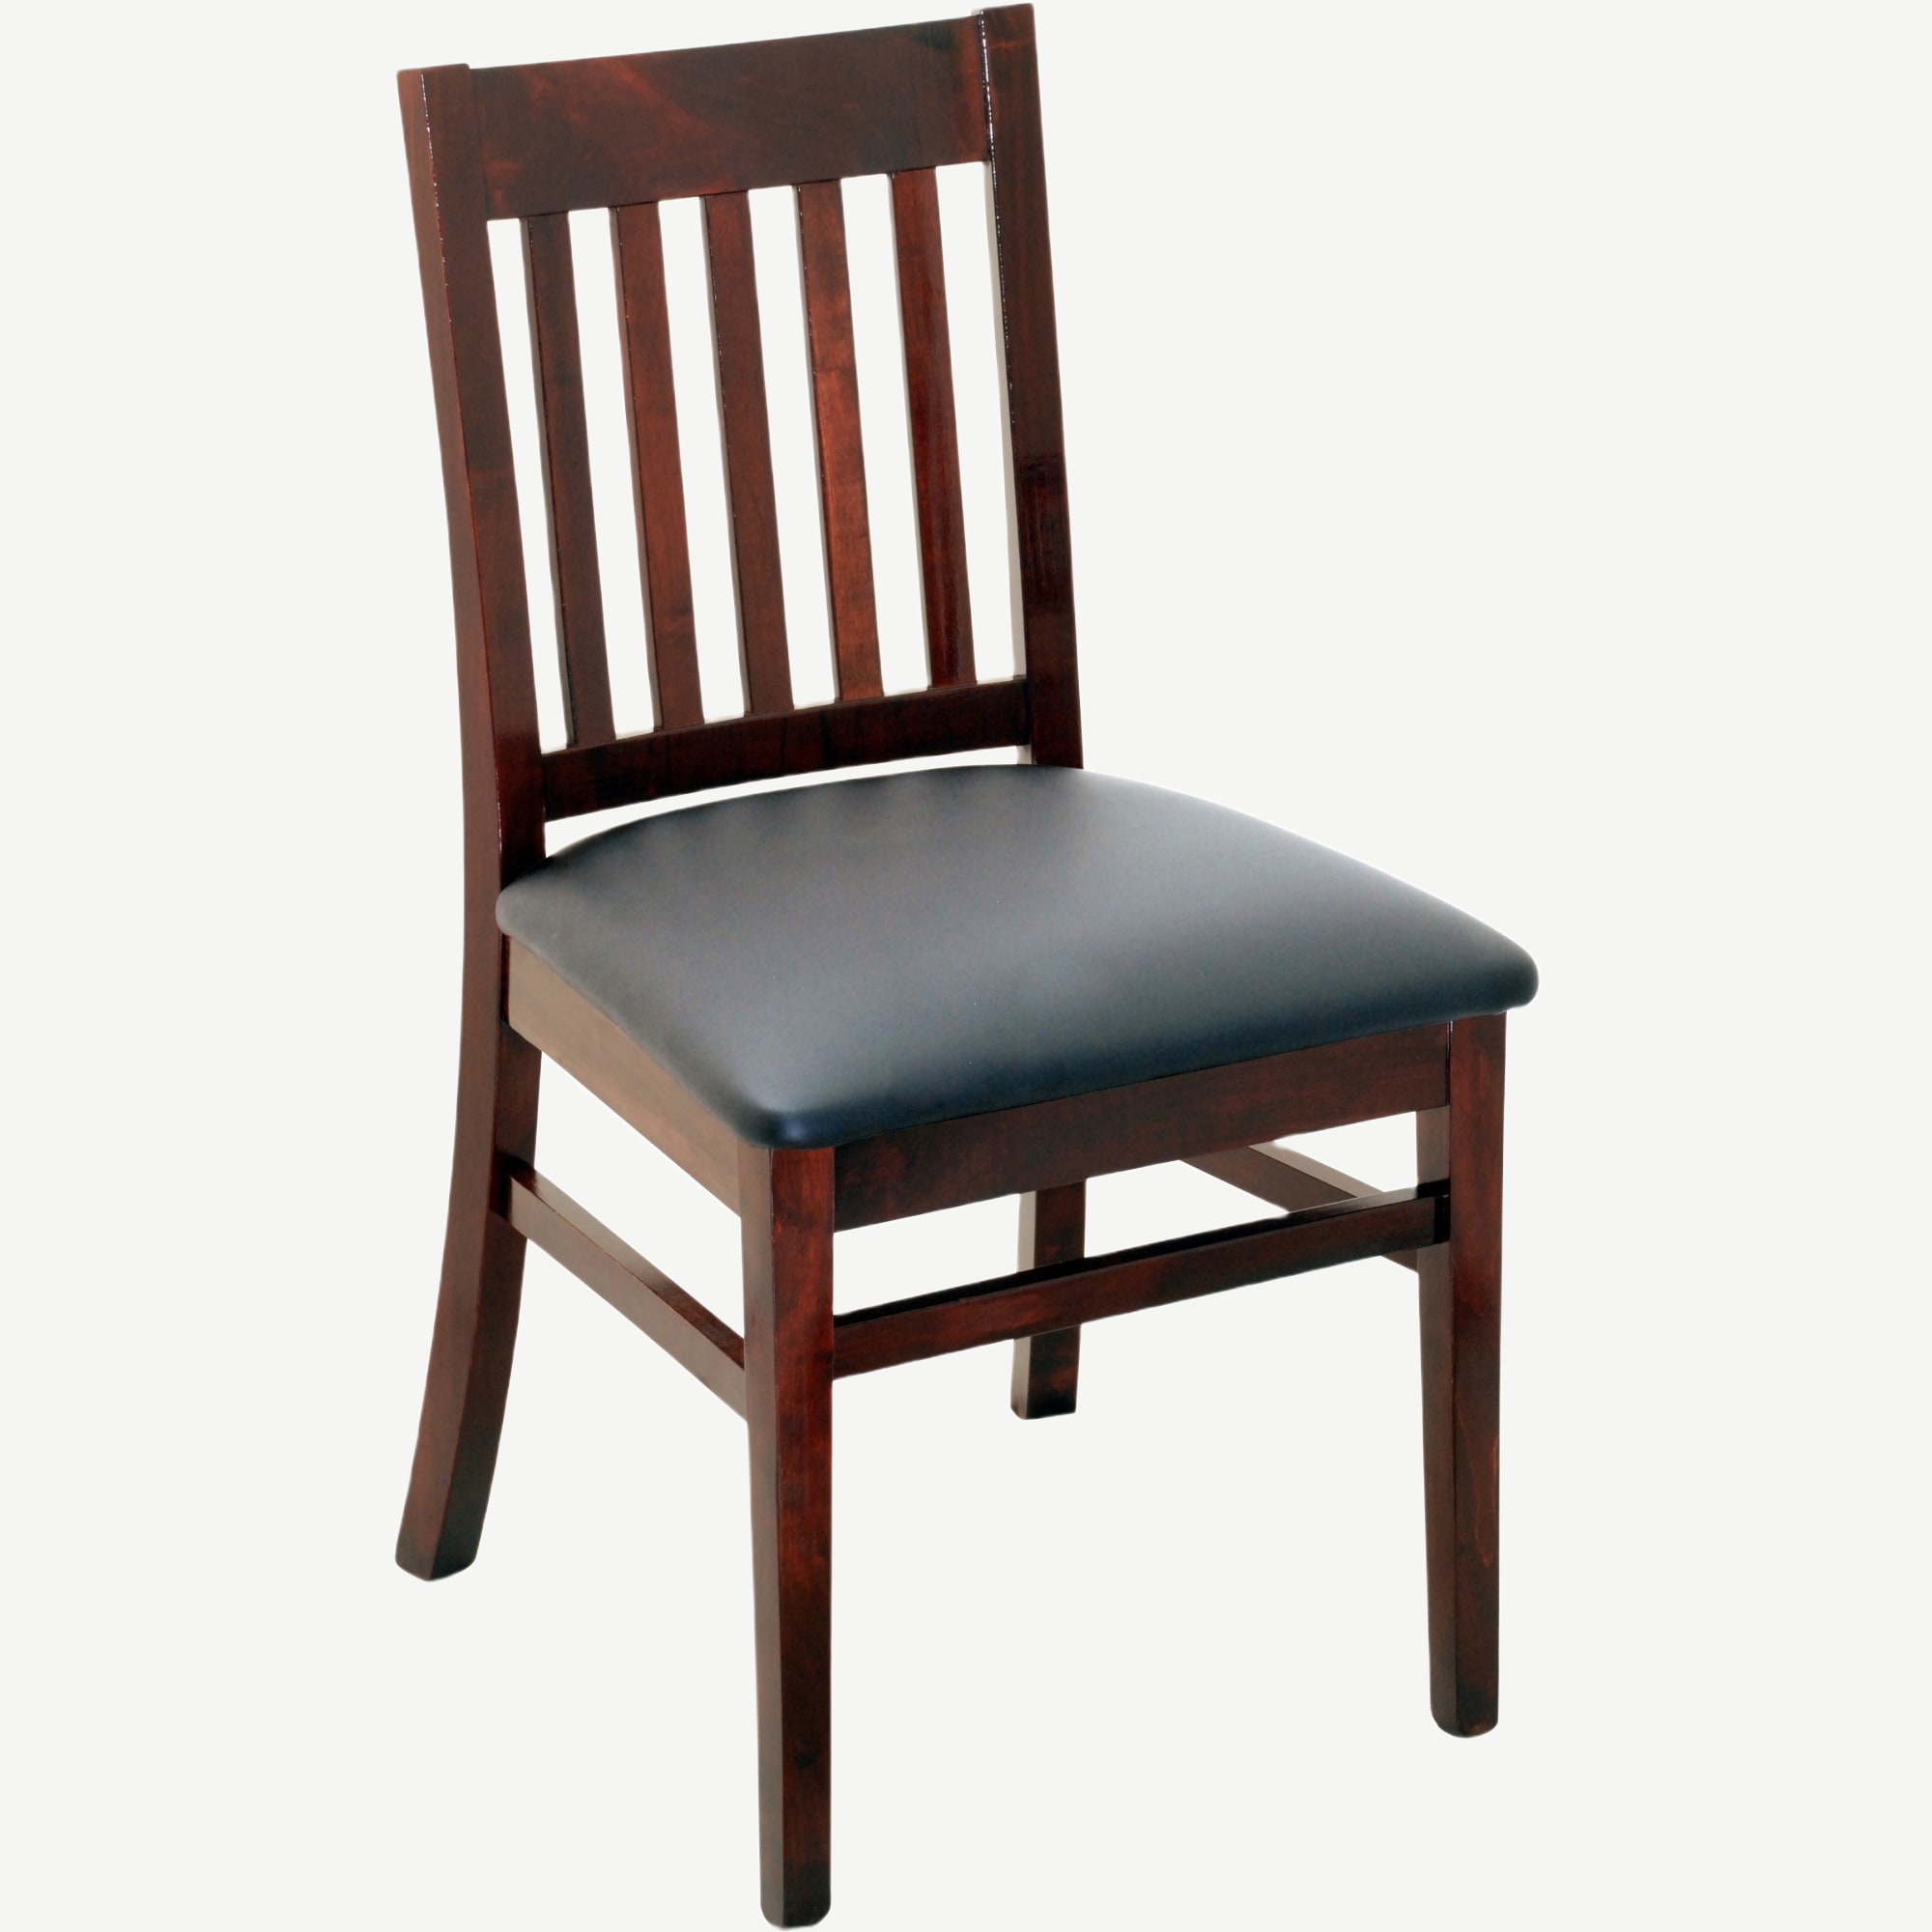 Designer Series Logan Vertical Slat Chair